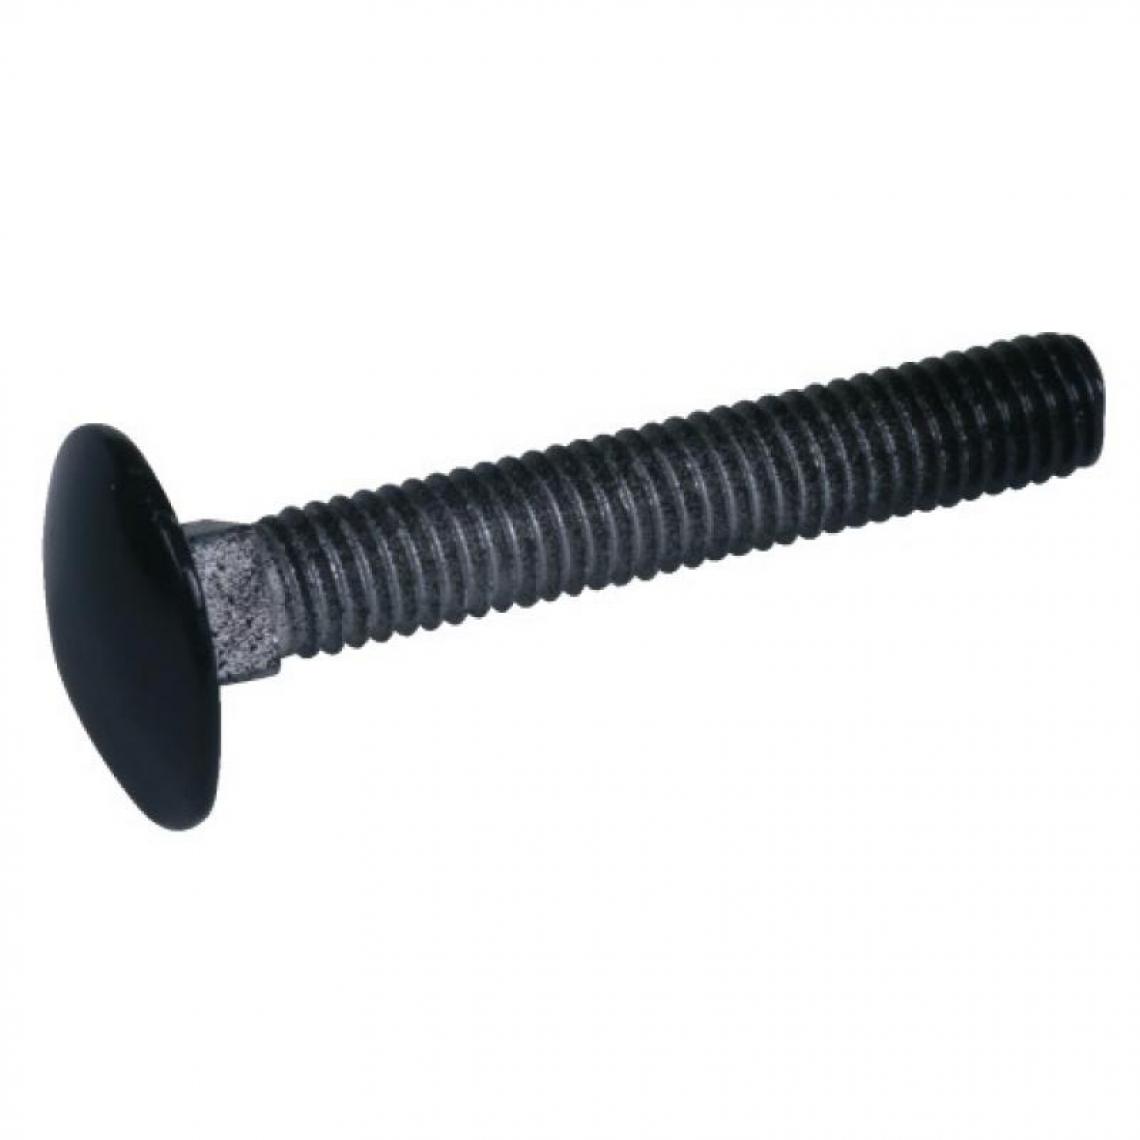 Torbel Industrie - Boulons tête ronde collet carré 6 x 50 mm finition noir pour volets aluminium et PVC boîte de - Charnière de fenetre